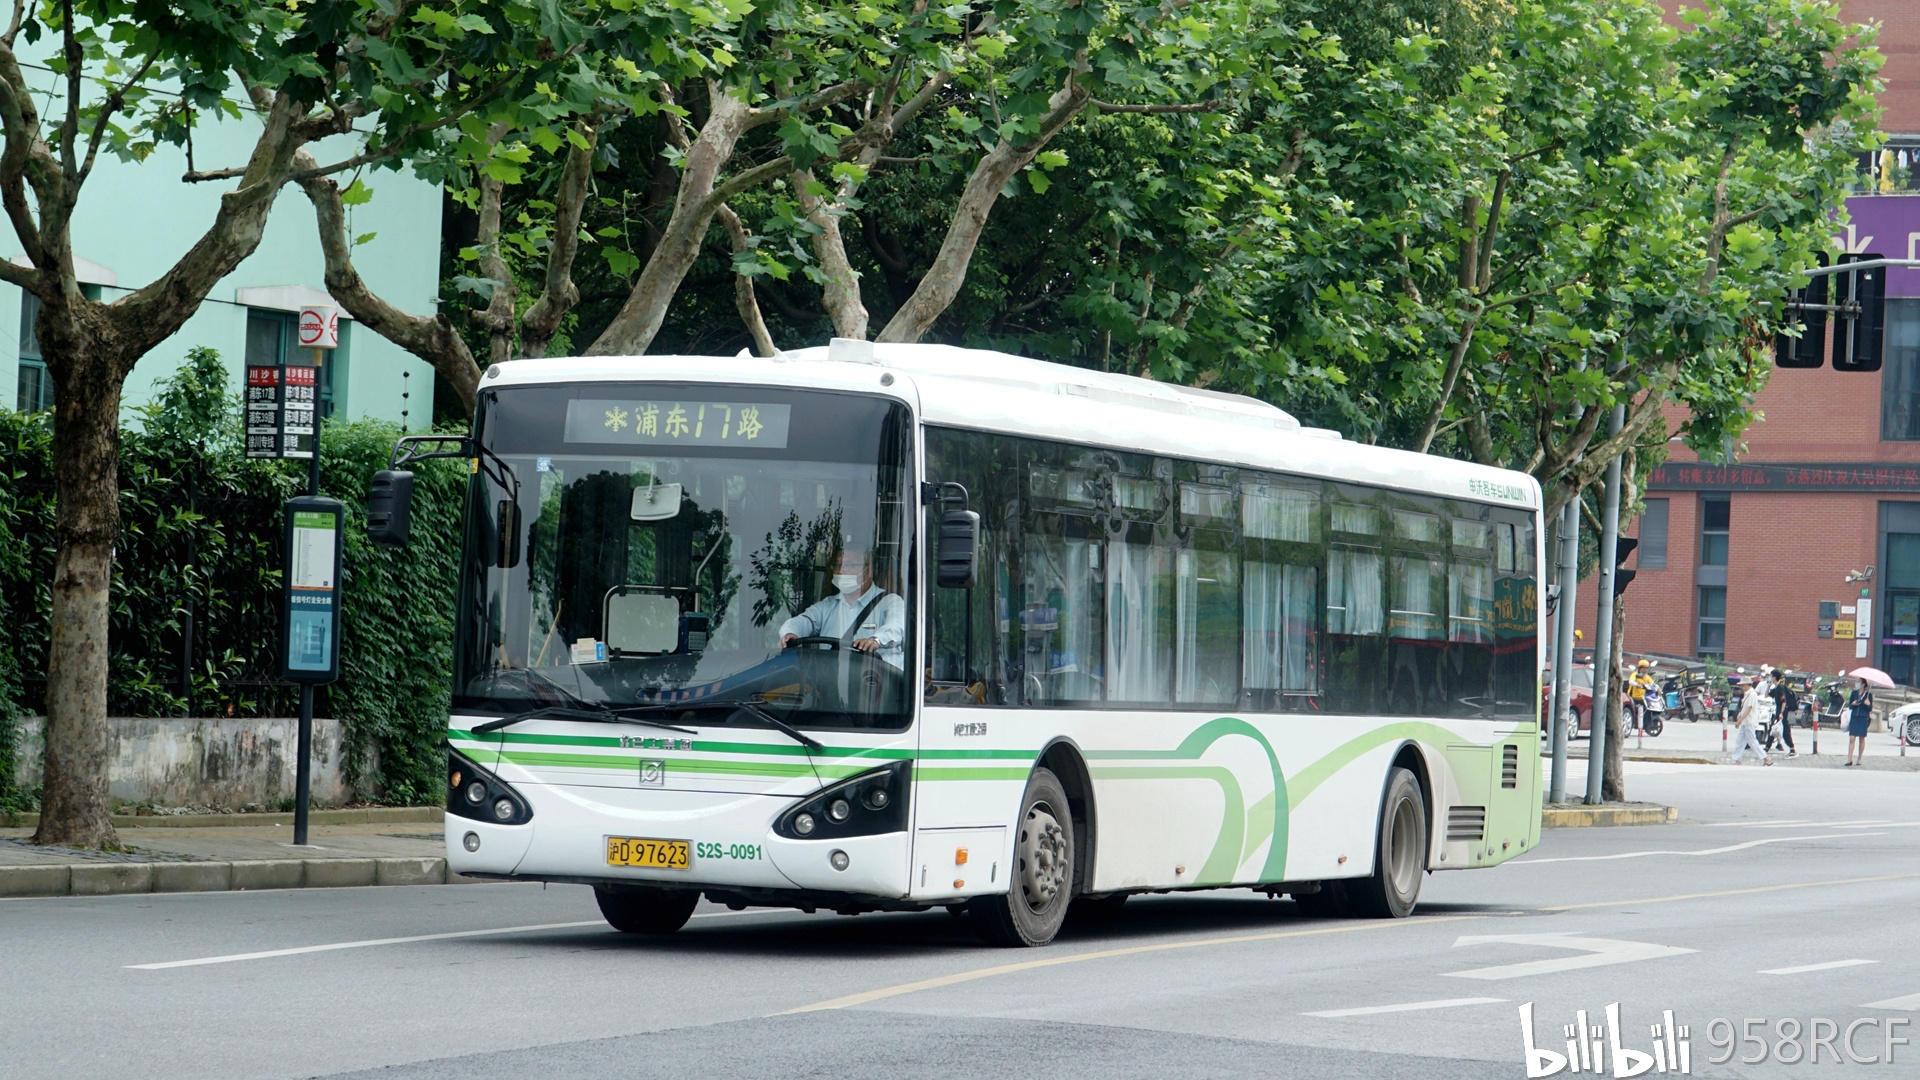 上海公交现役车型图集截止2020年9月申沃篇②